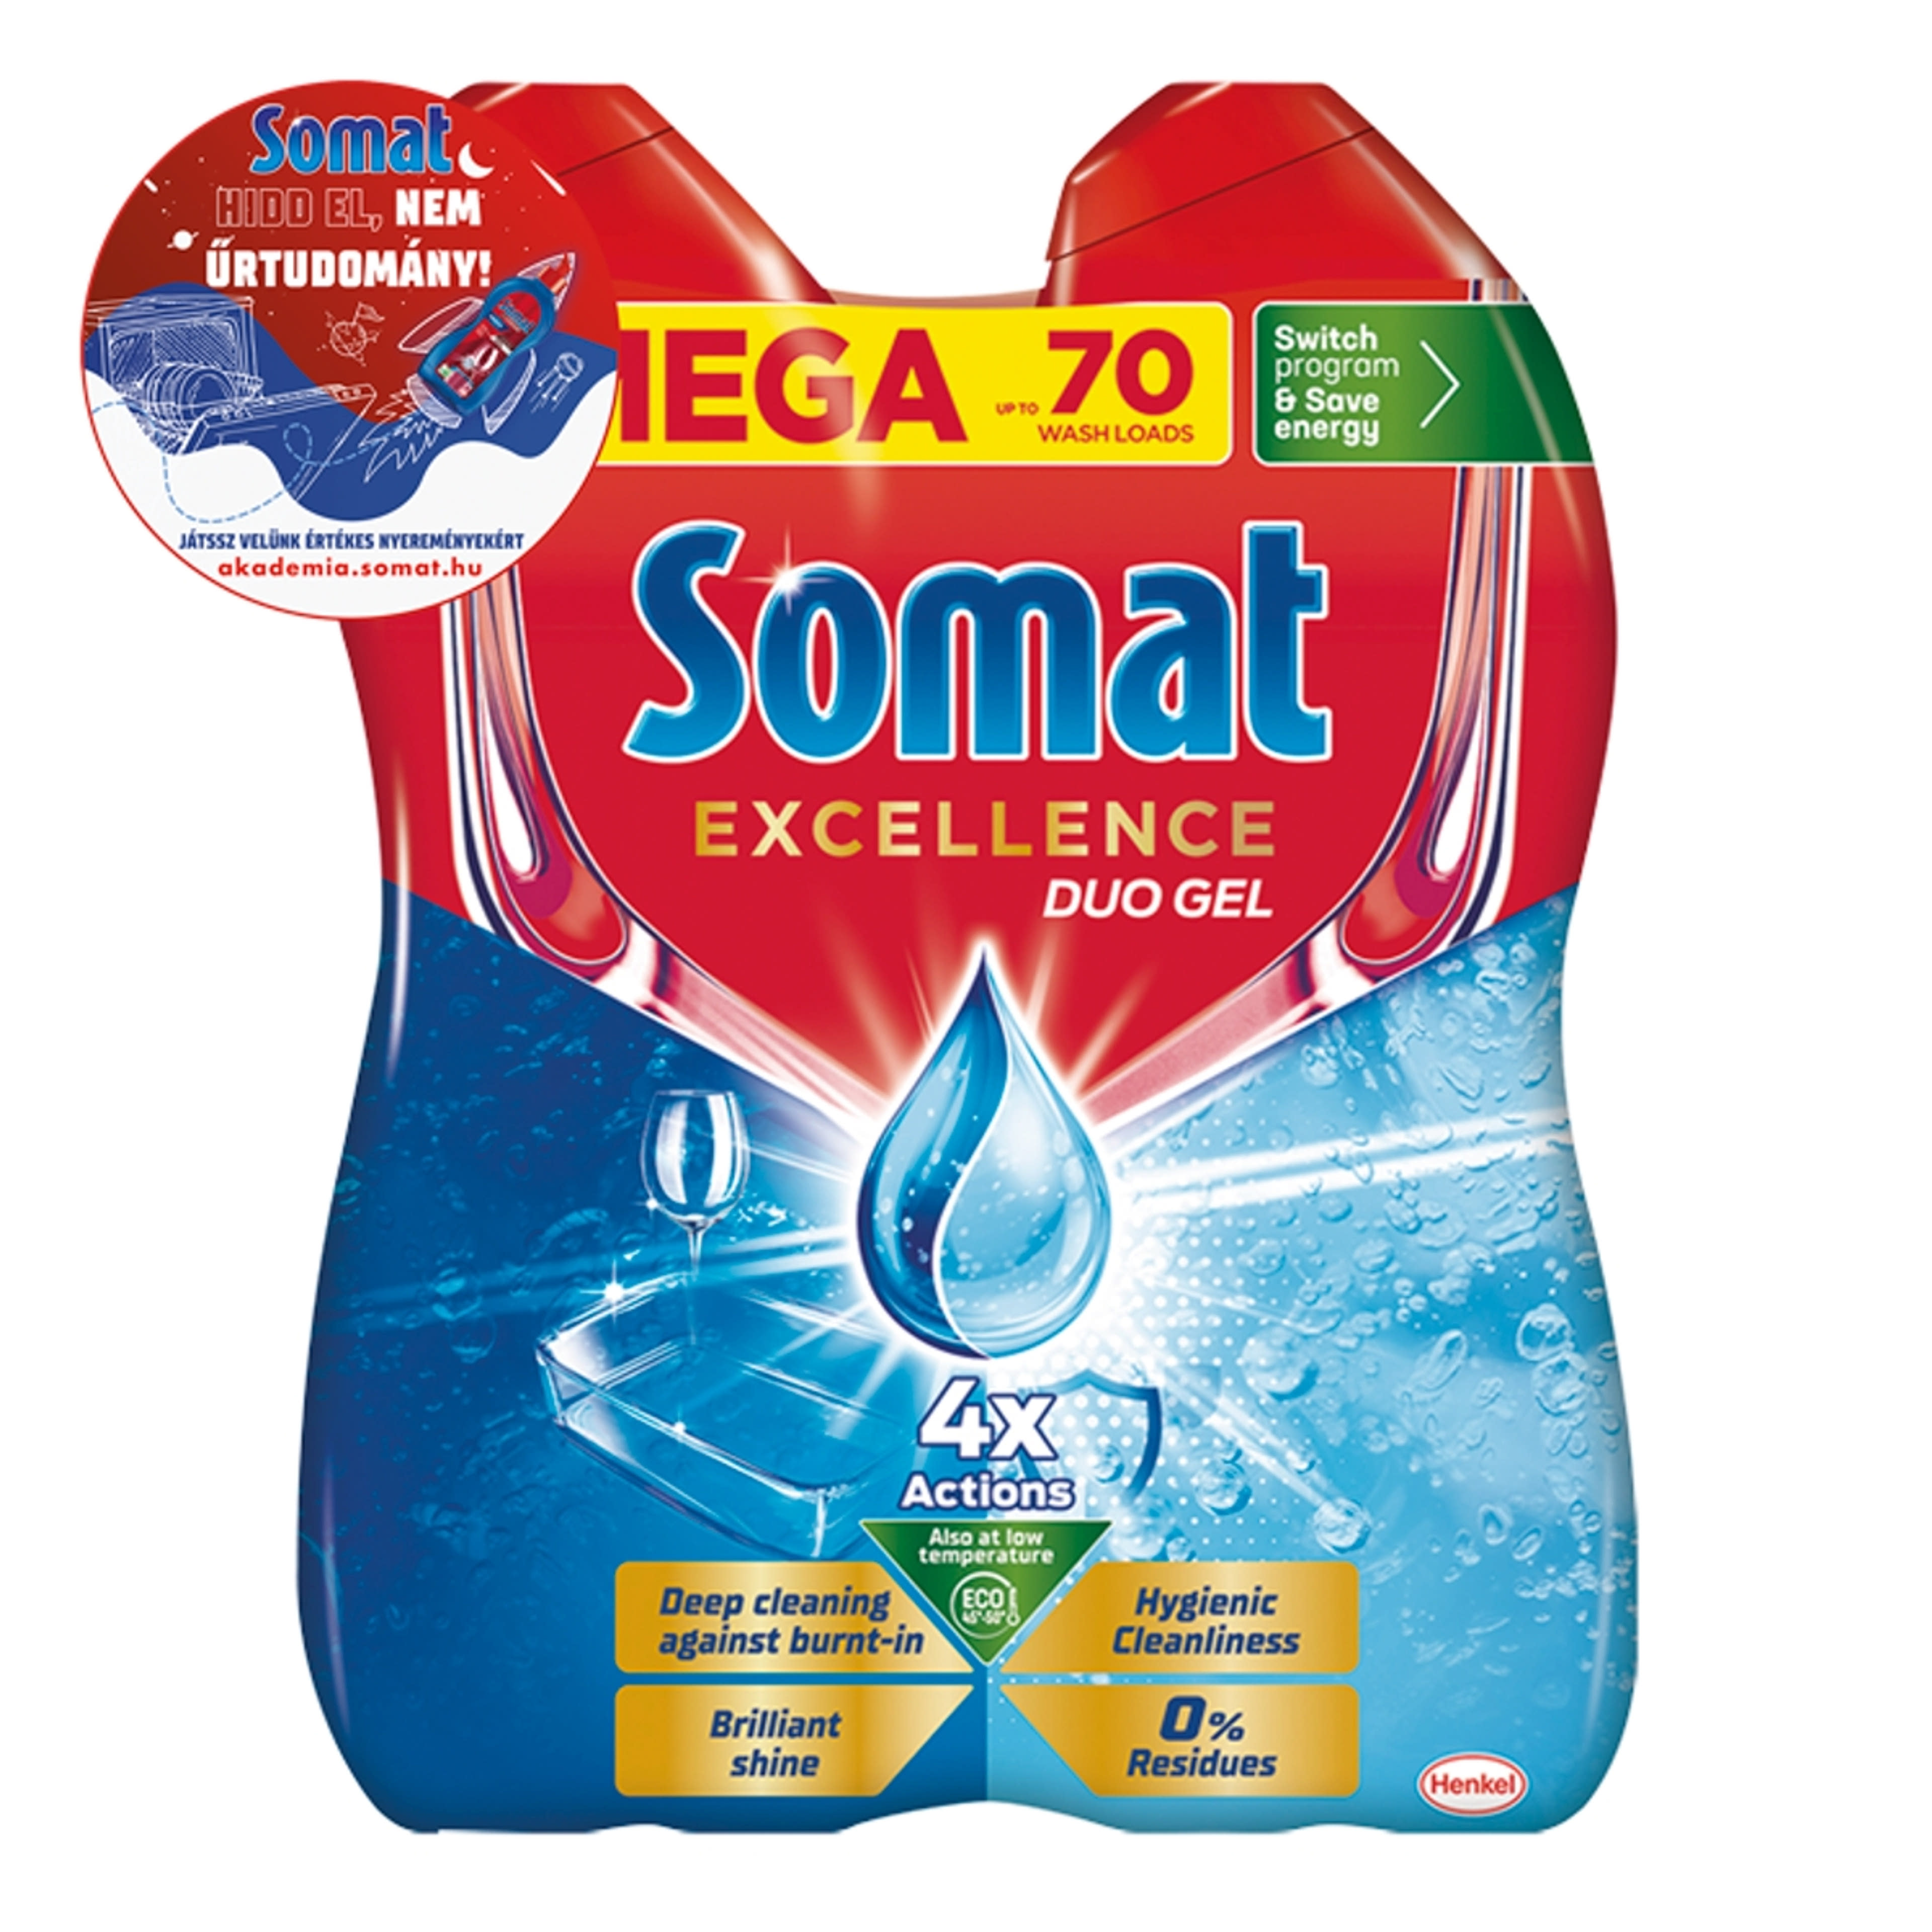 Somat Excellence Duo Gel gépi mosogatószer gél 70 mosogatás 2 x 630 ml - 1260 ml